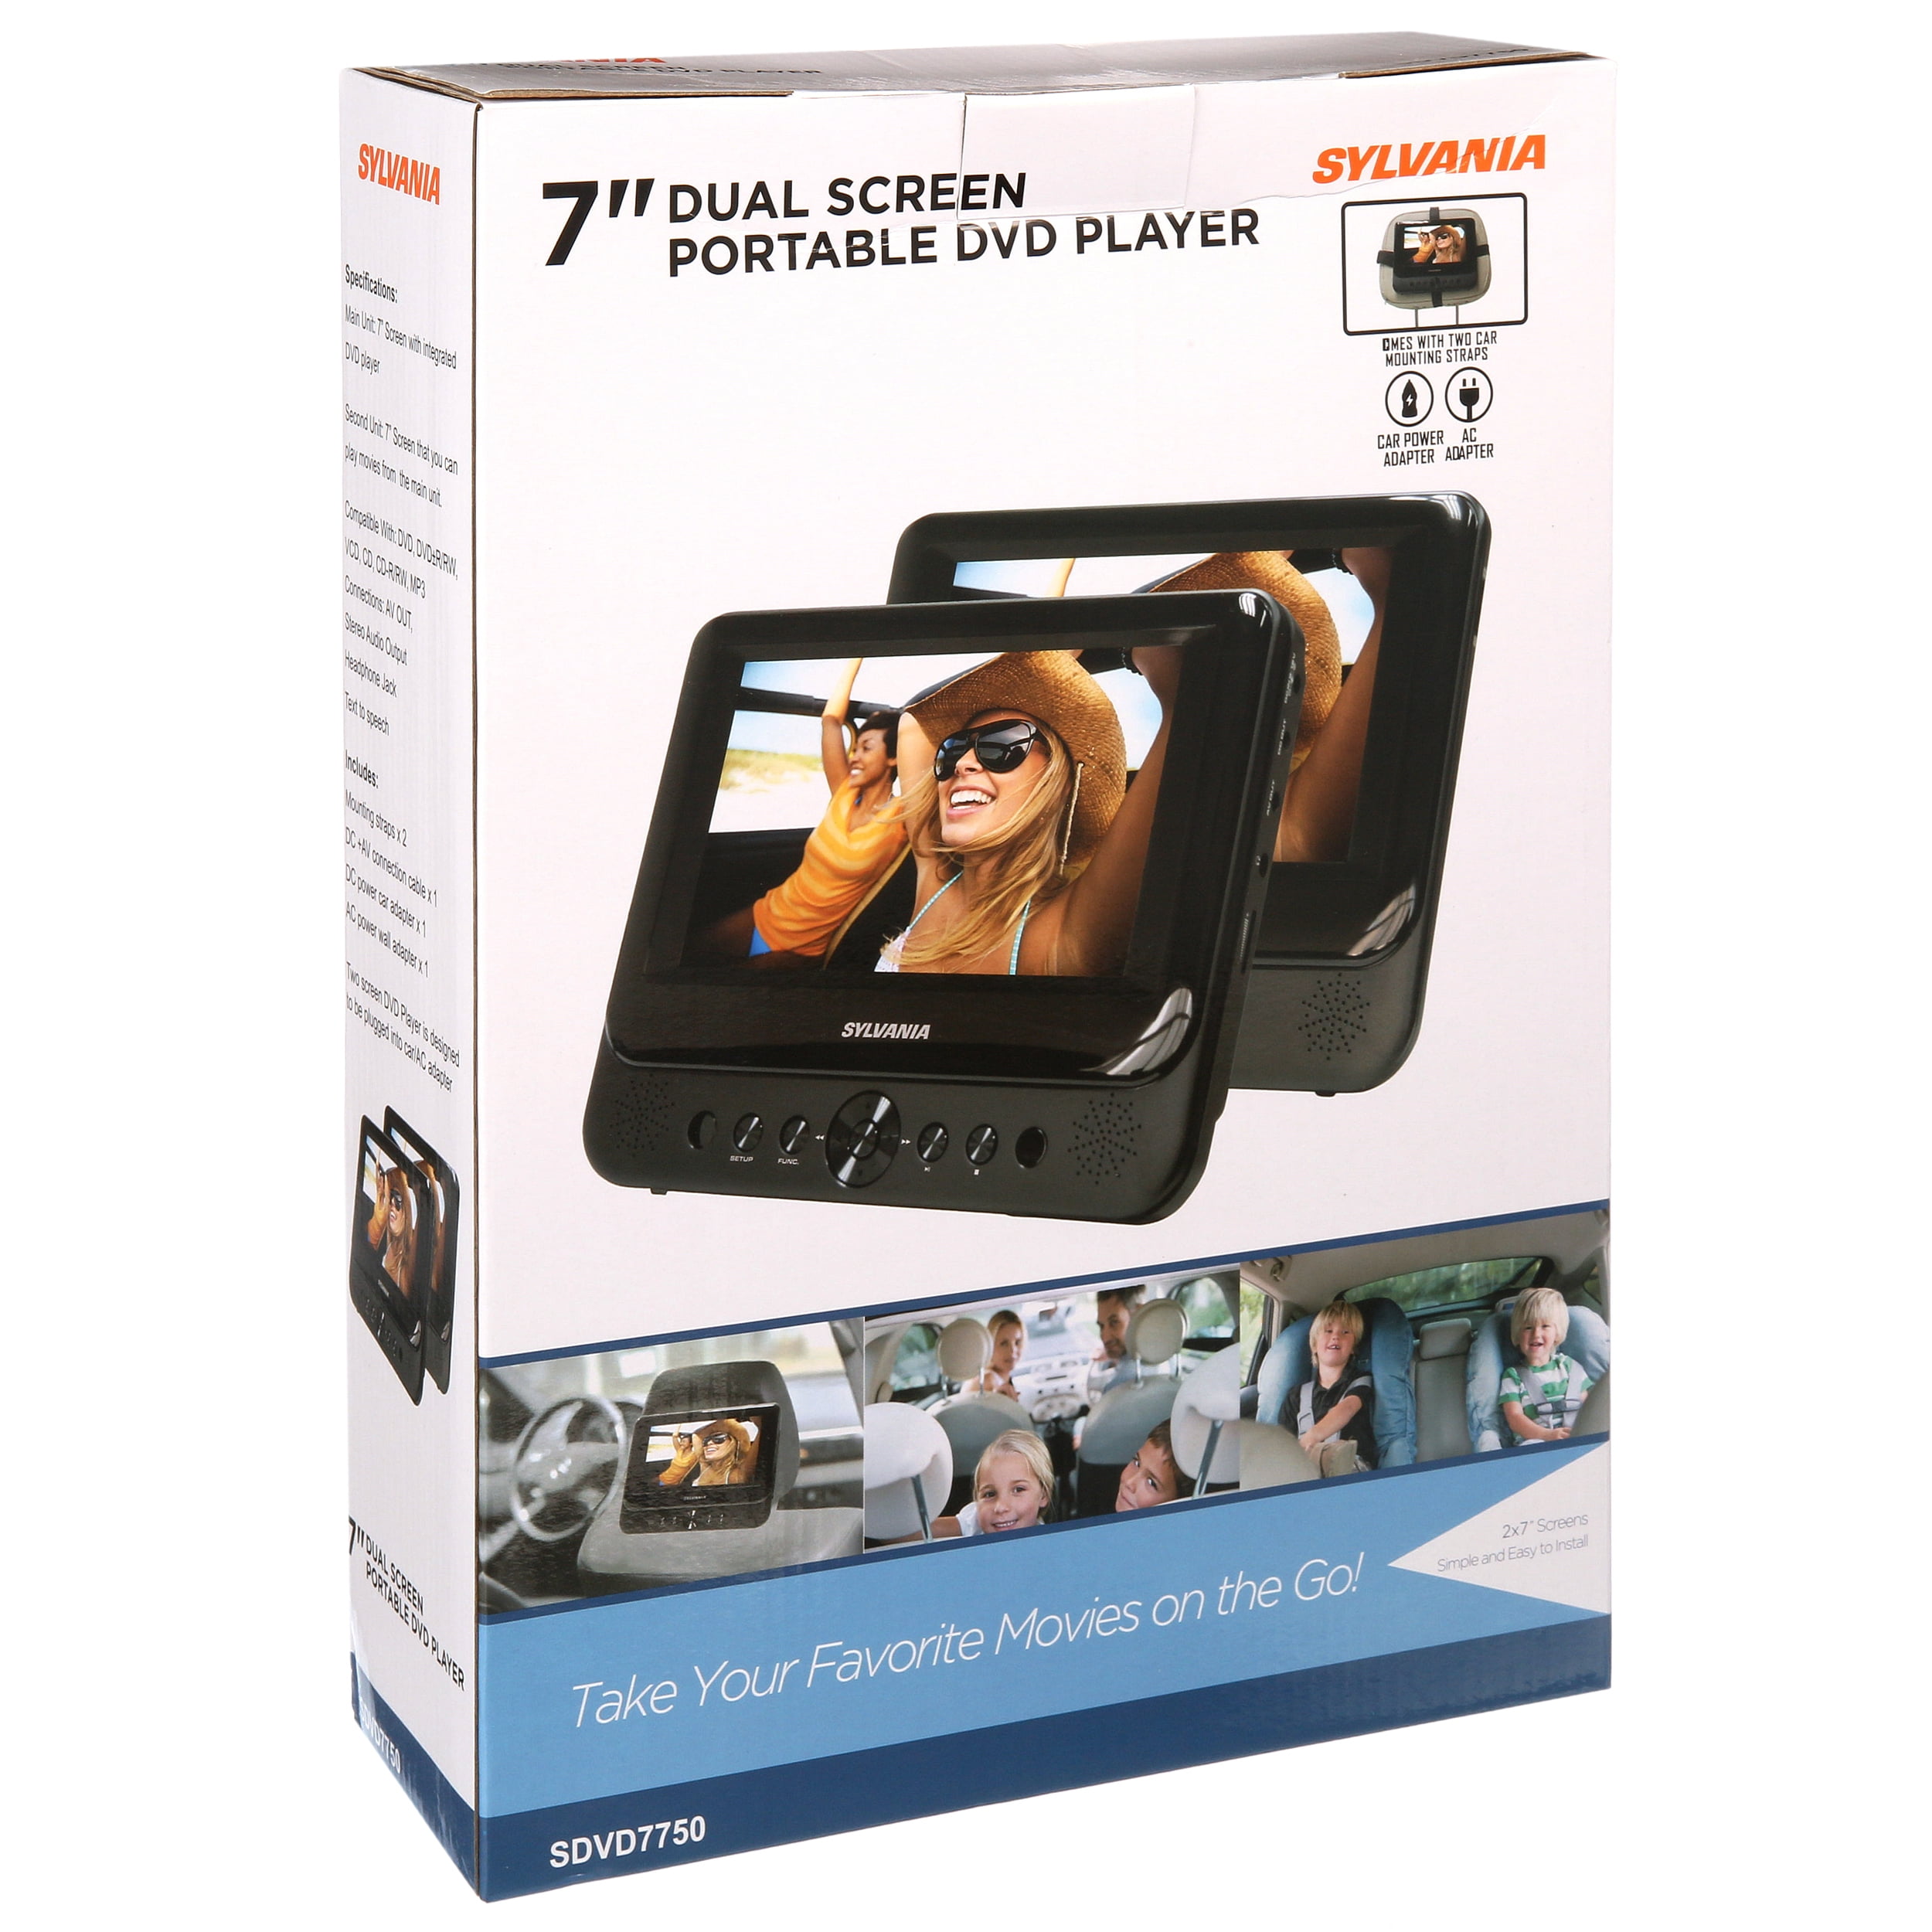 Sylvania 7 Dual Screen Portable DVD Player 